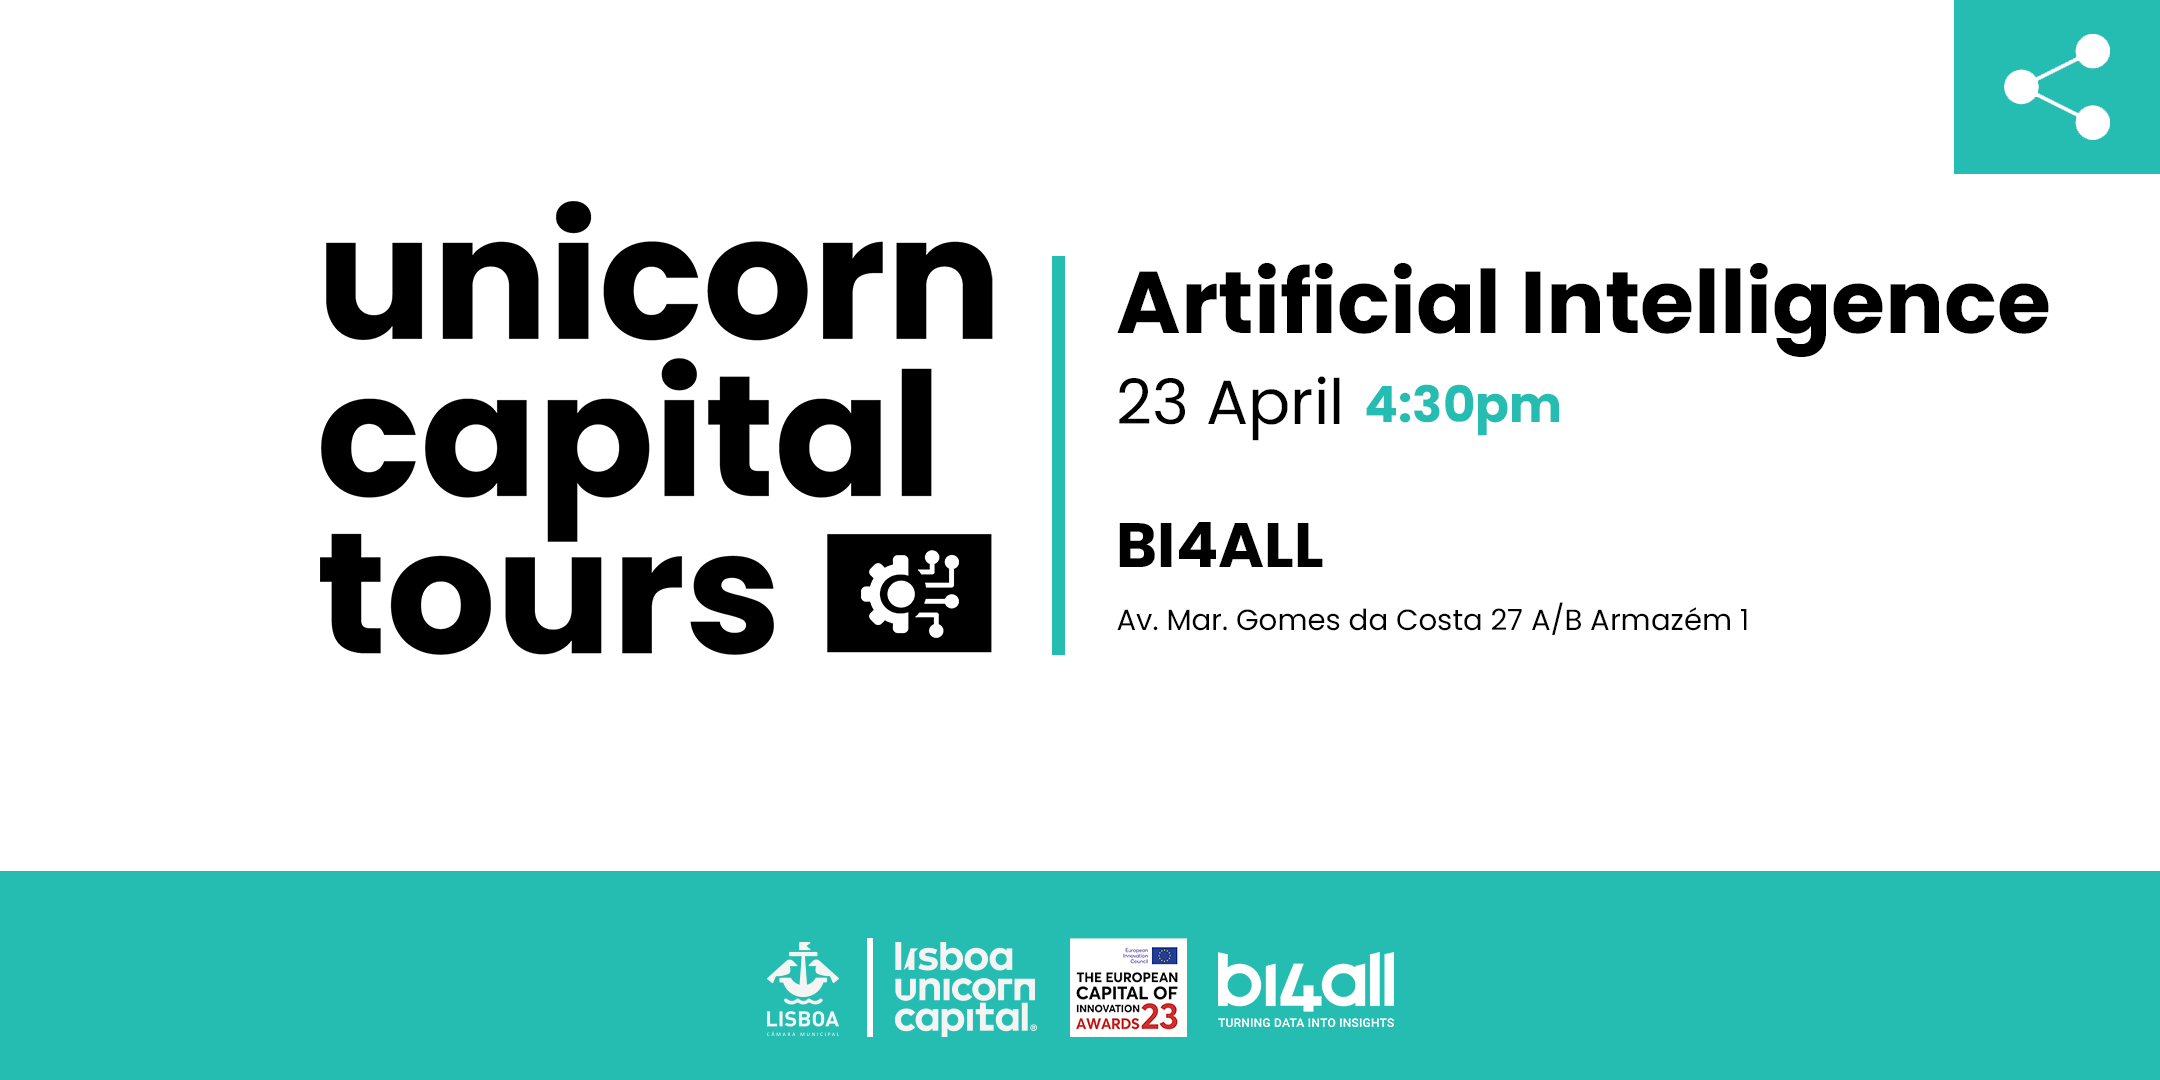 Lisboa Unicorn Capital organiza tour dedicada à Inteligência Artificial em Lisboa